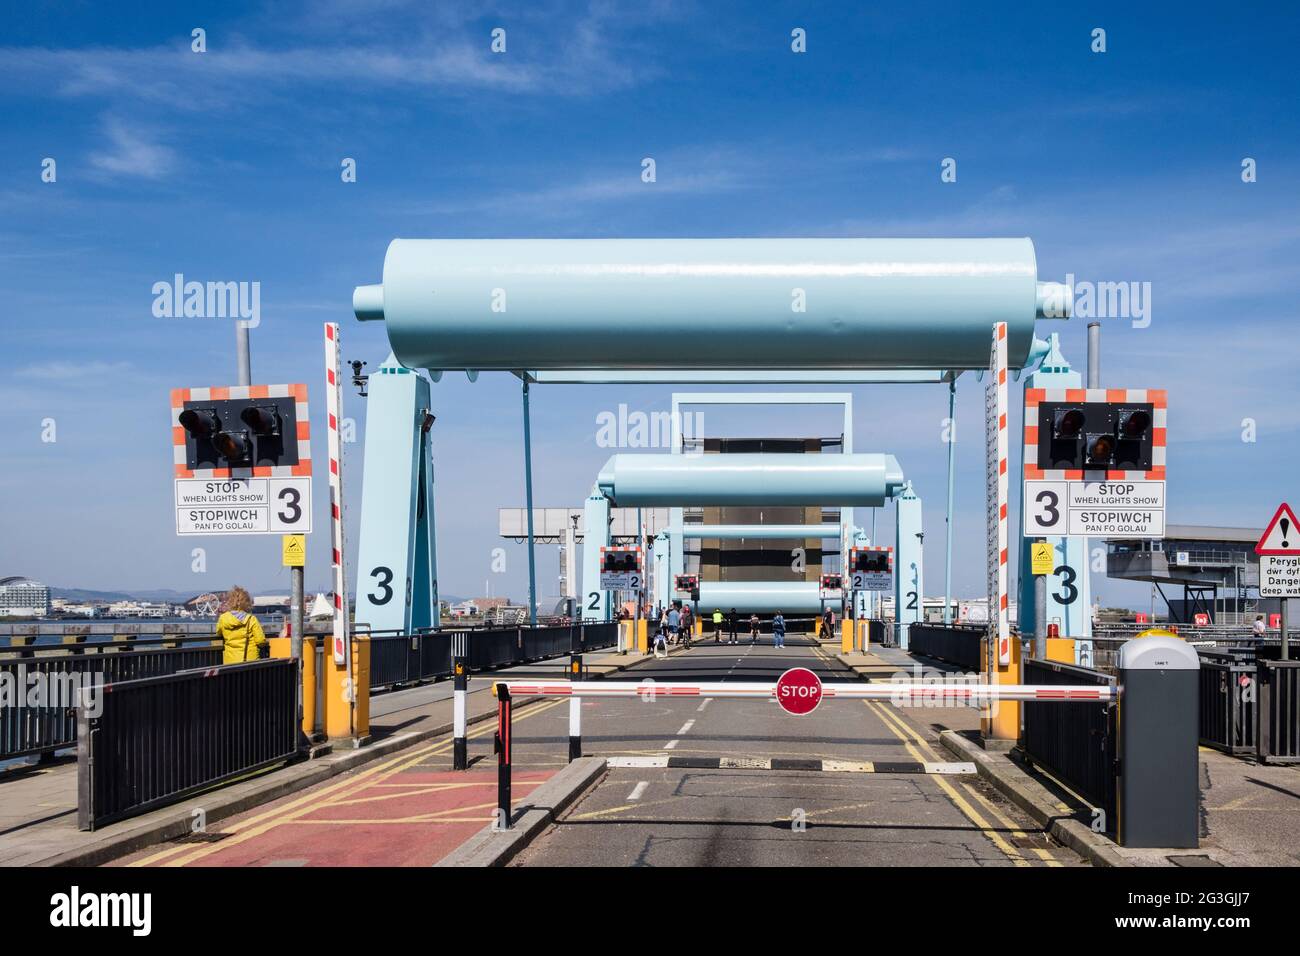 Barrière de circulation fermée pour l'ouverture du pont Bascule Cardiff Bay barrage. Penarth, Cardiff, (Caerdydd), Vale de Glamourgan, pays de Galles du Sud, Royaume-Uni, Grande-Bretagne Banque D'Images